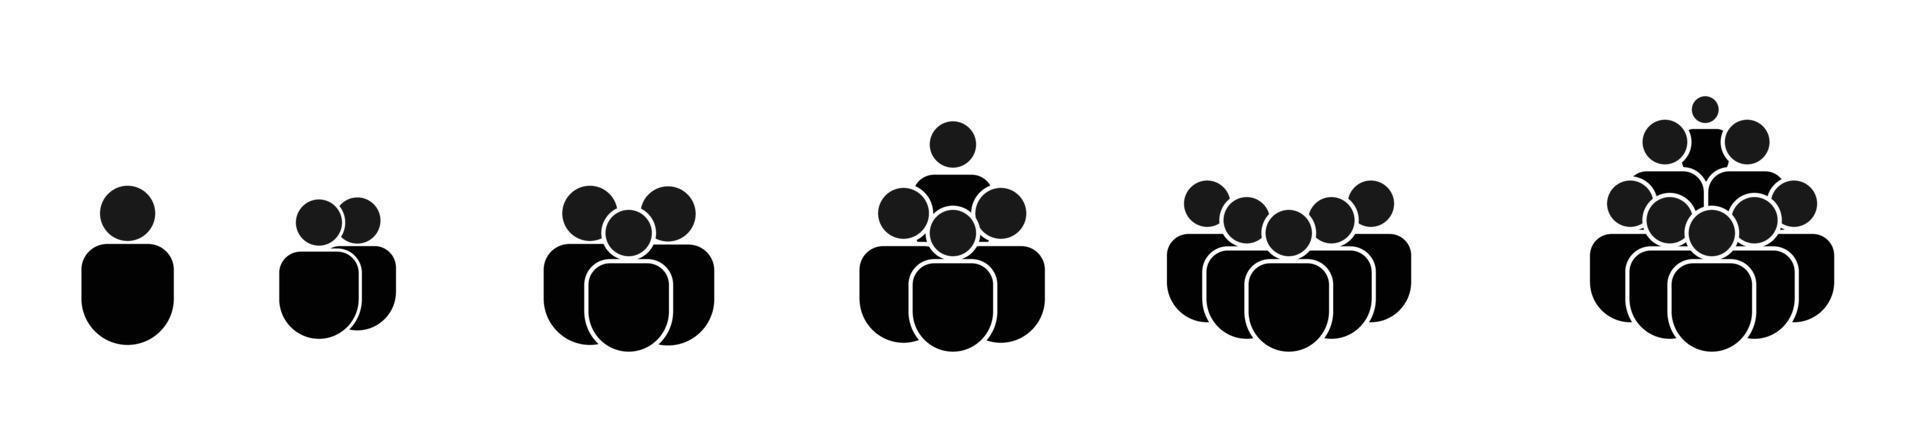 conjunto de ícones de pessoas, pessoa da equipe, multidão, população isolada no fundo branco, ilustração vetorial vetor